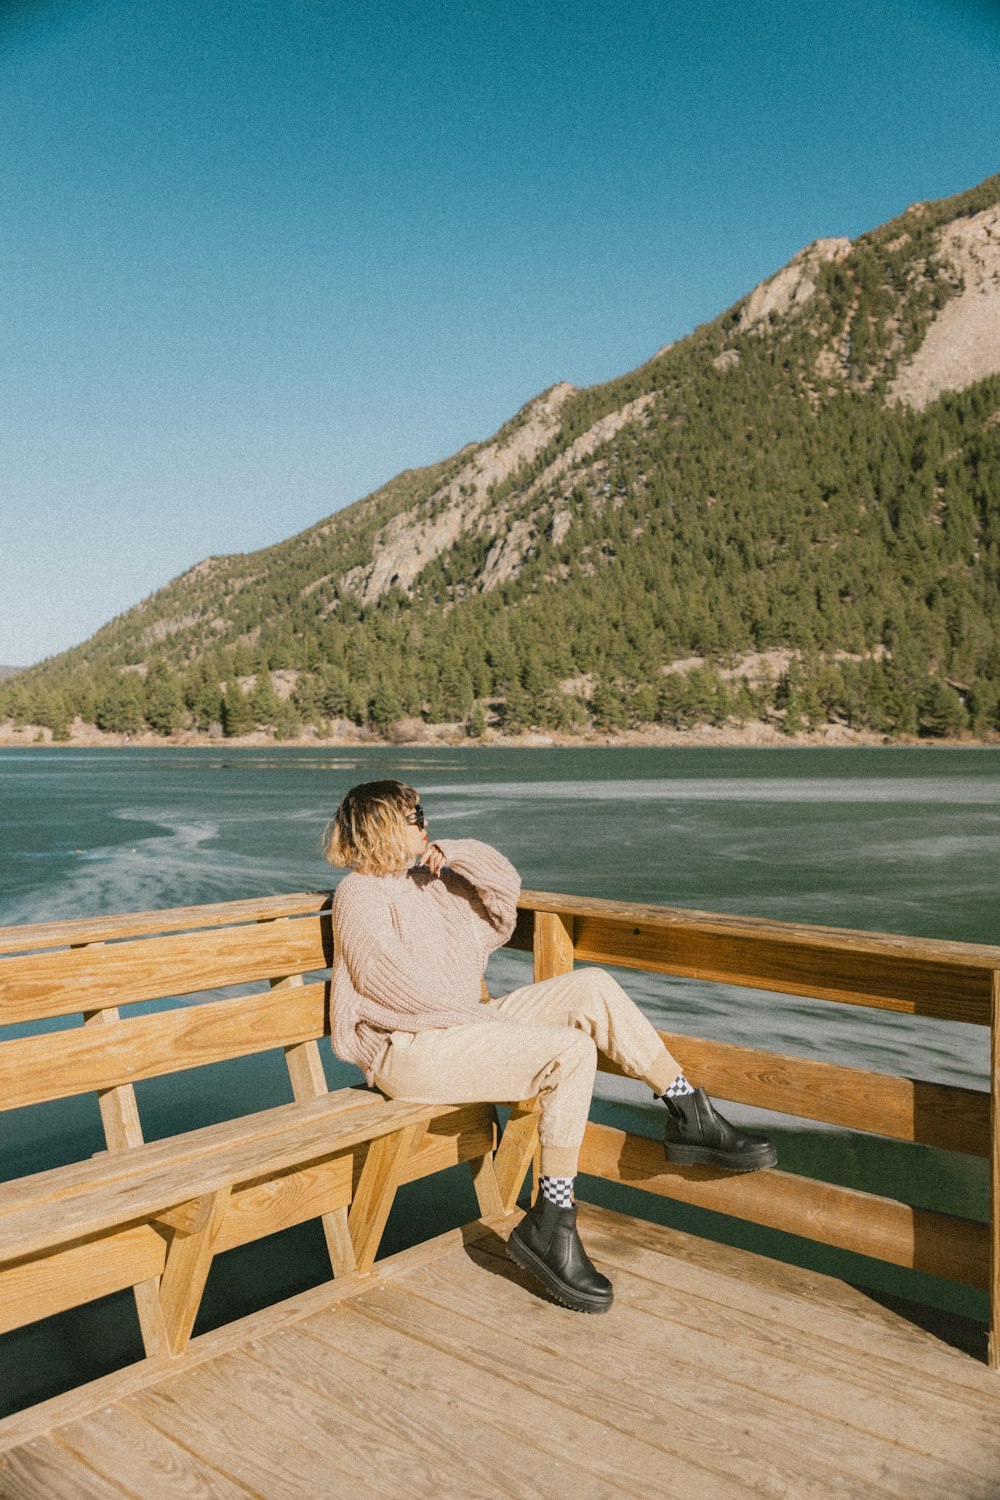 Eine Frau sitzt auf einer Holzbank neben einem Gewässer